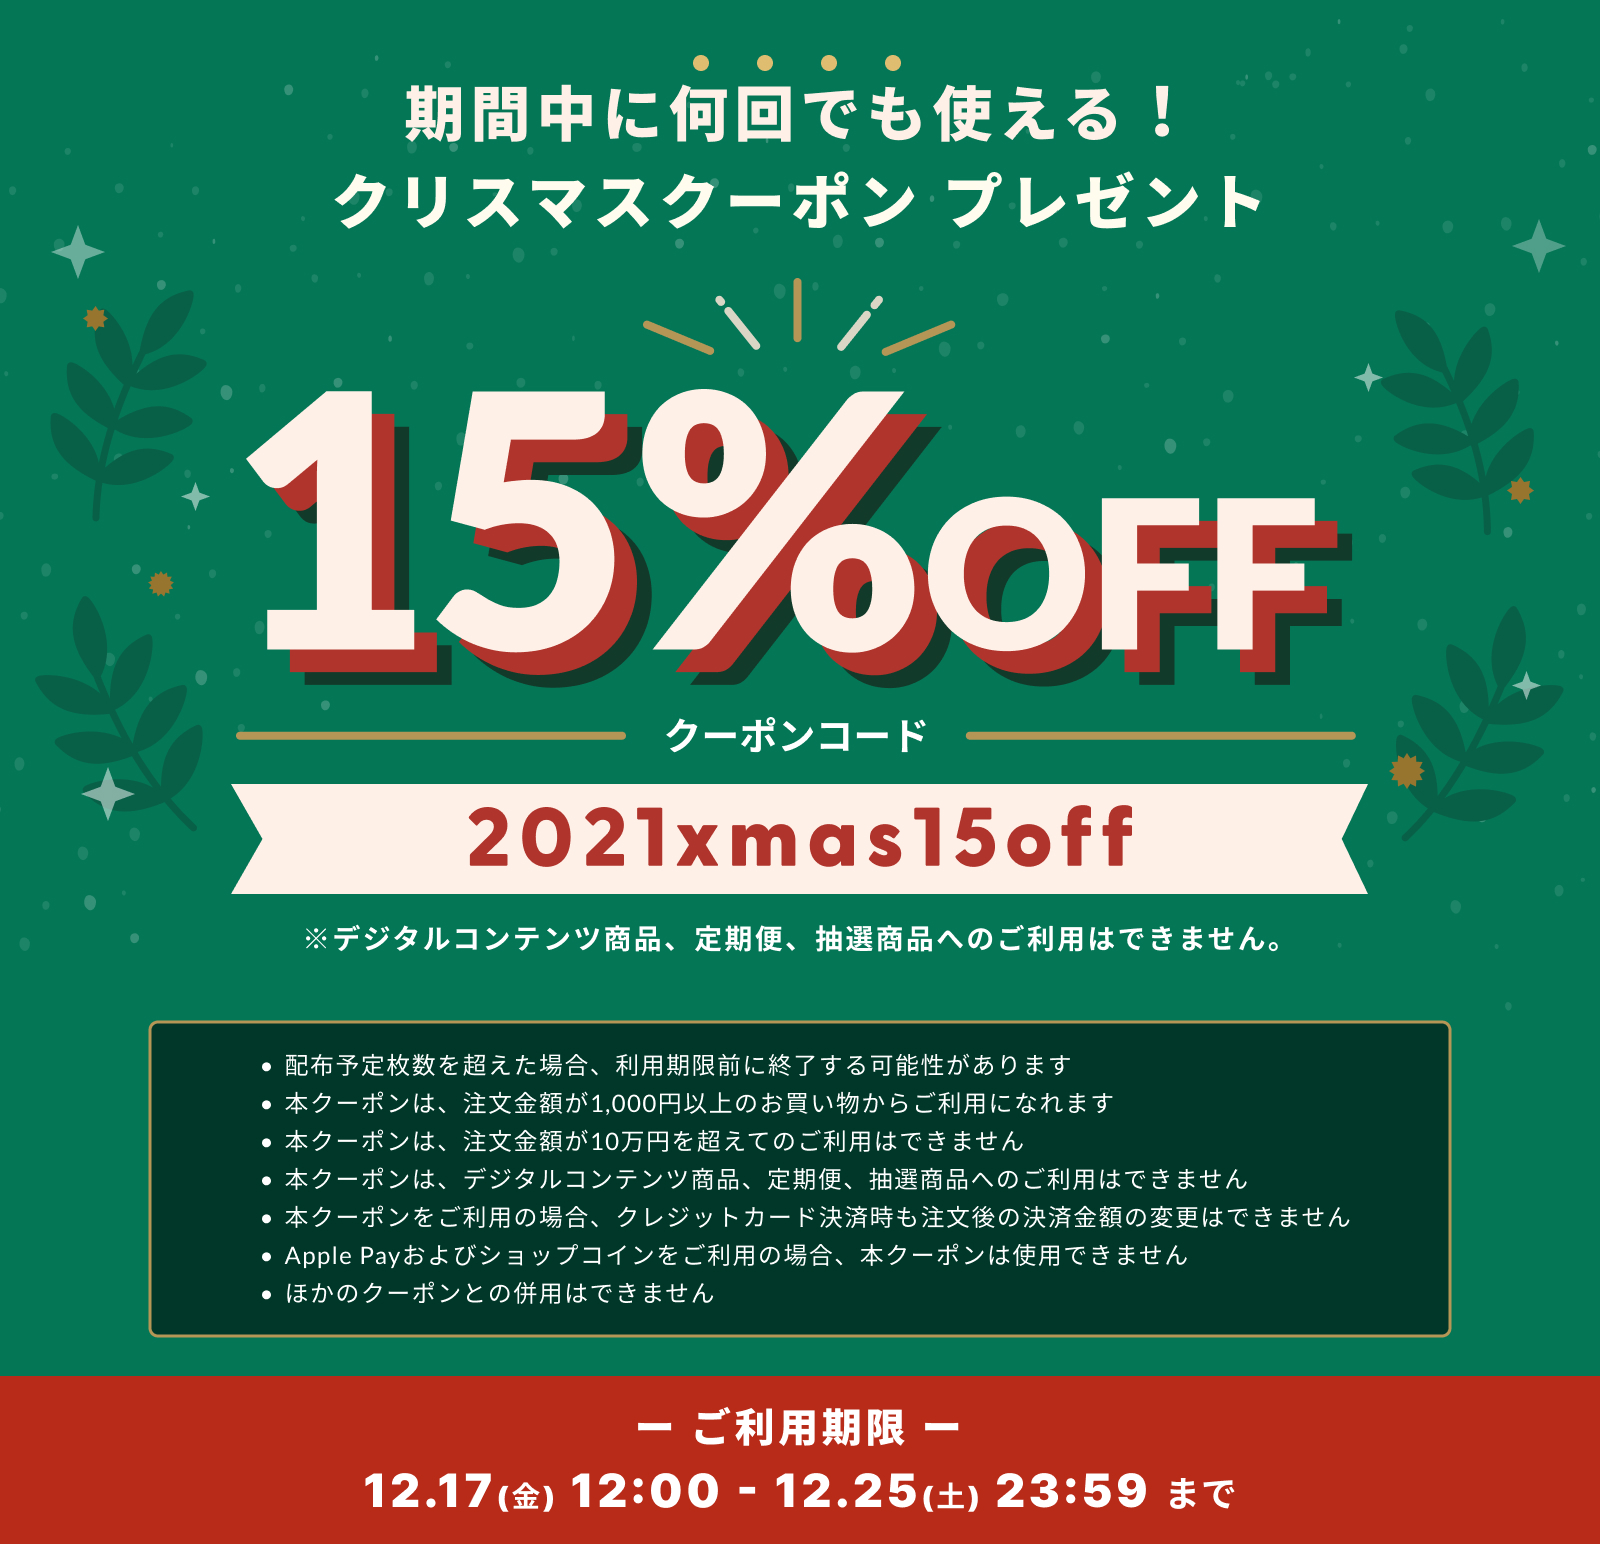 15%OFF!! クリスマスクーポンキャンペーン実施中 〜12/25 (土)まで